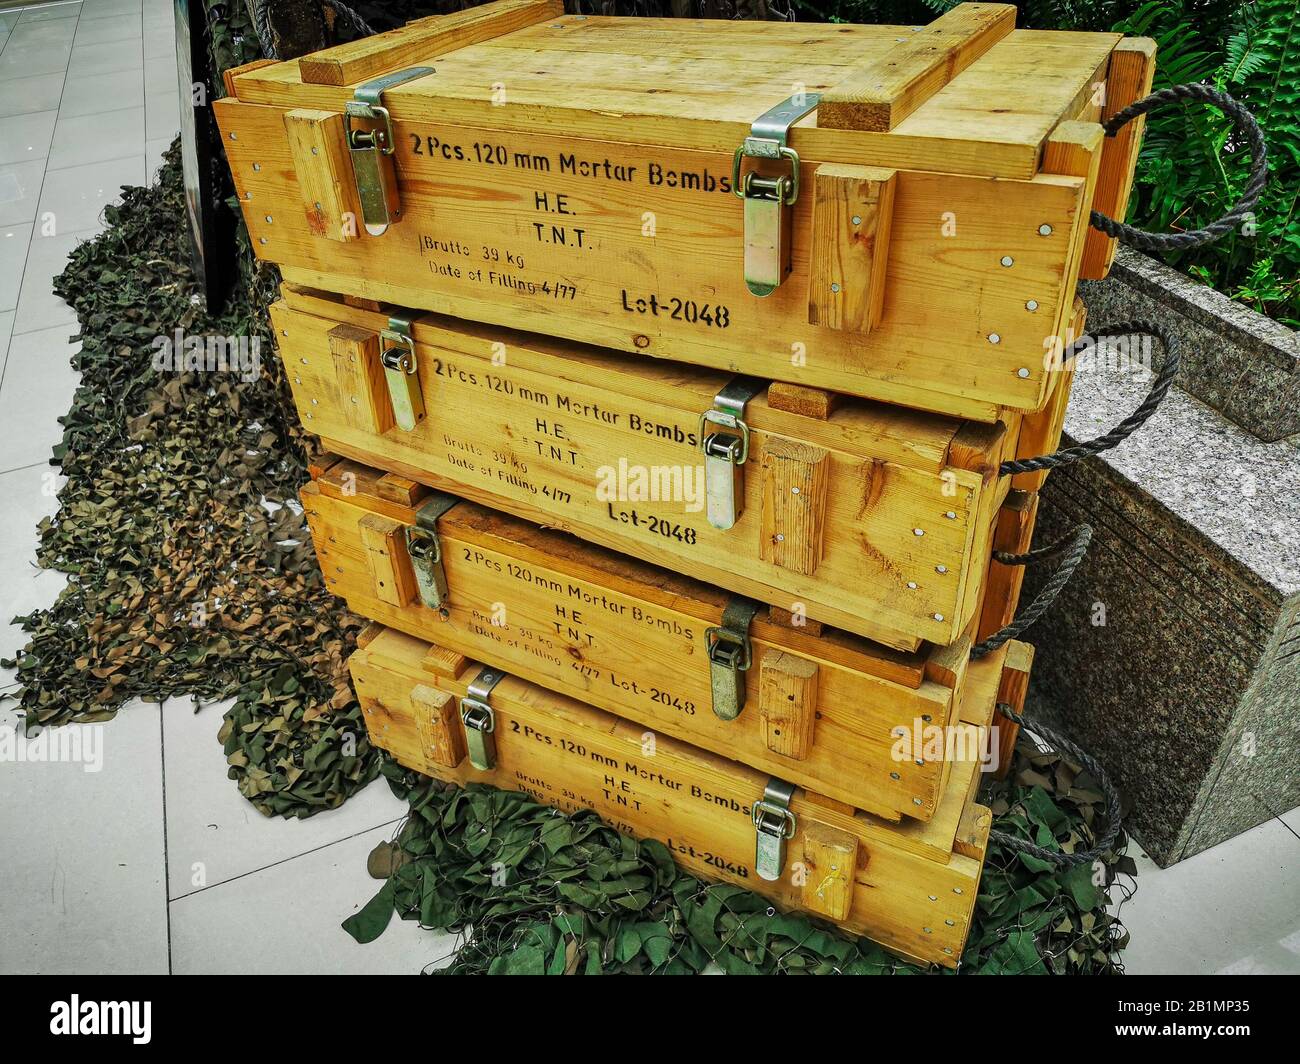 QUITO, ECUADOR - DECEMBER 12, 2019: Cases of mortar Bombs for display, war concept Stock Photo